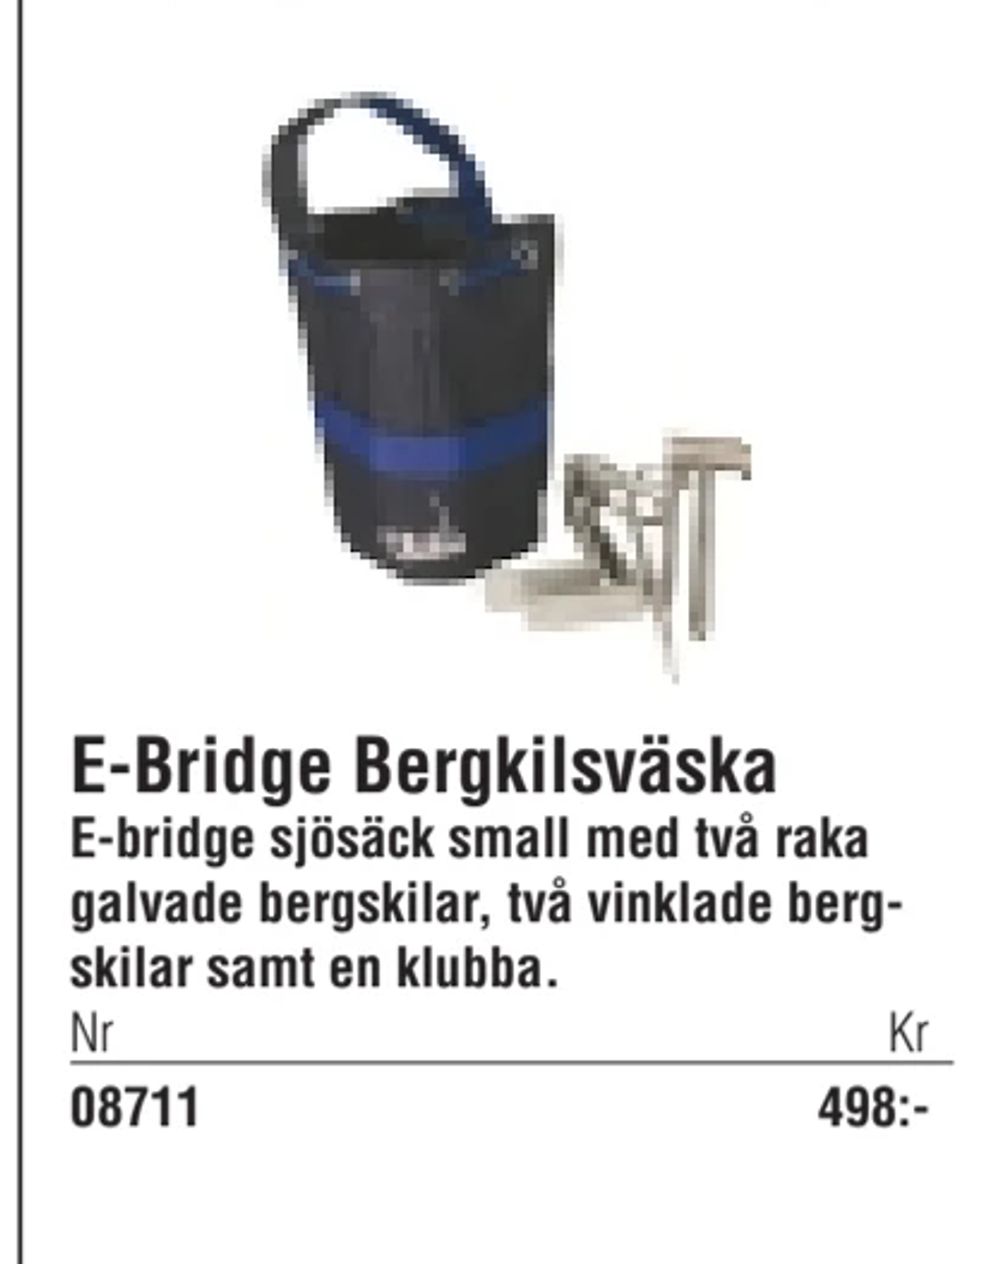 Erbjudanden på E-Bridge Bergkilsväska från Erlandsons Brygga för 498 kr